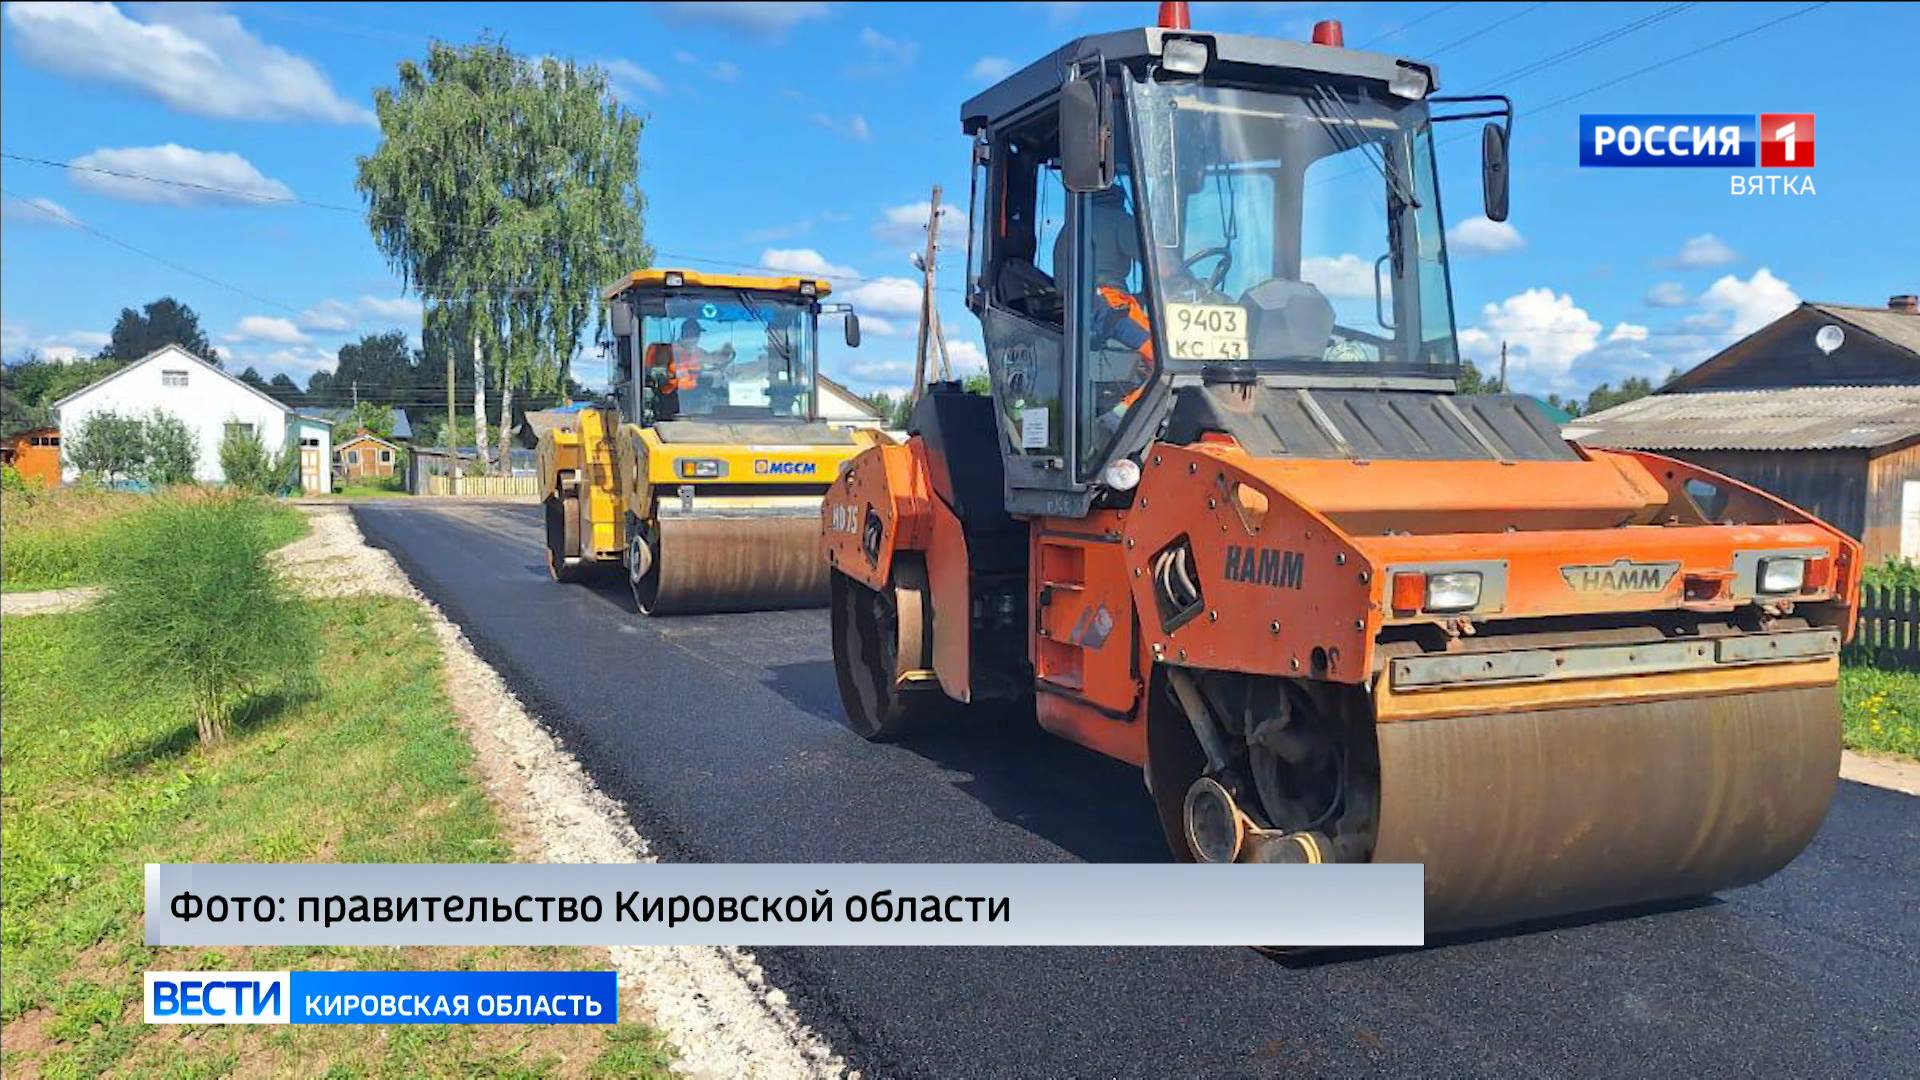 Обзор новостей из районов Кировской области